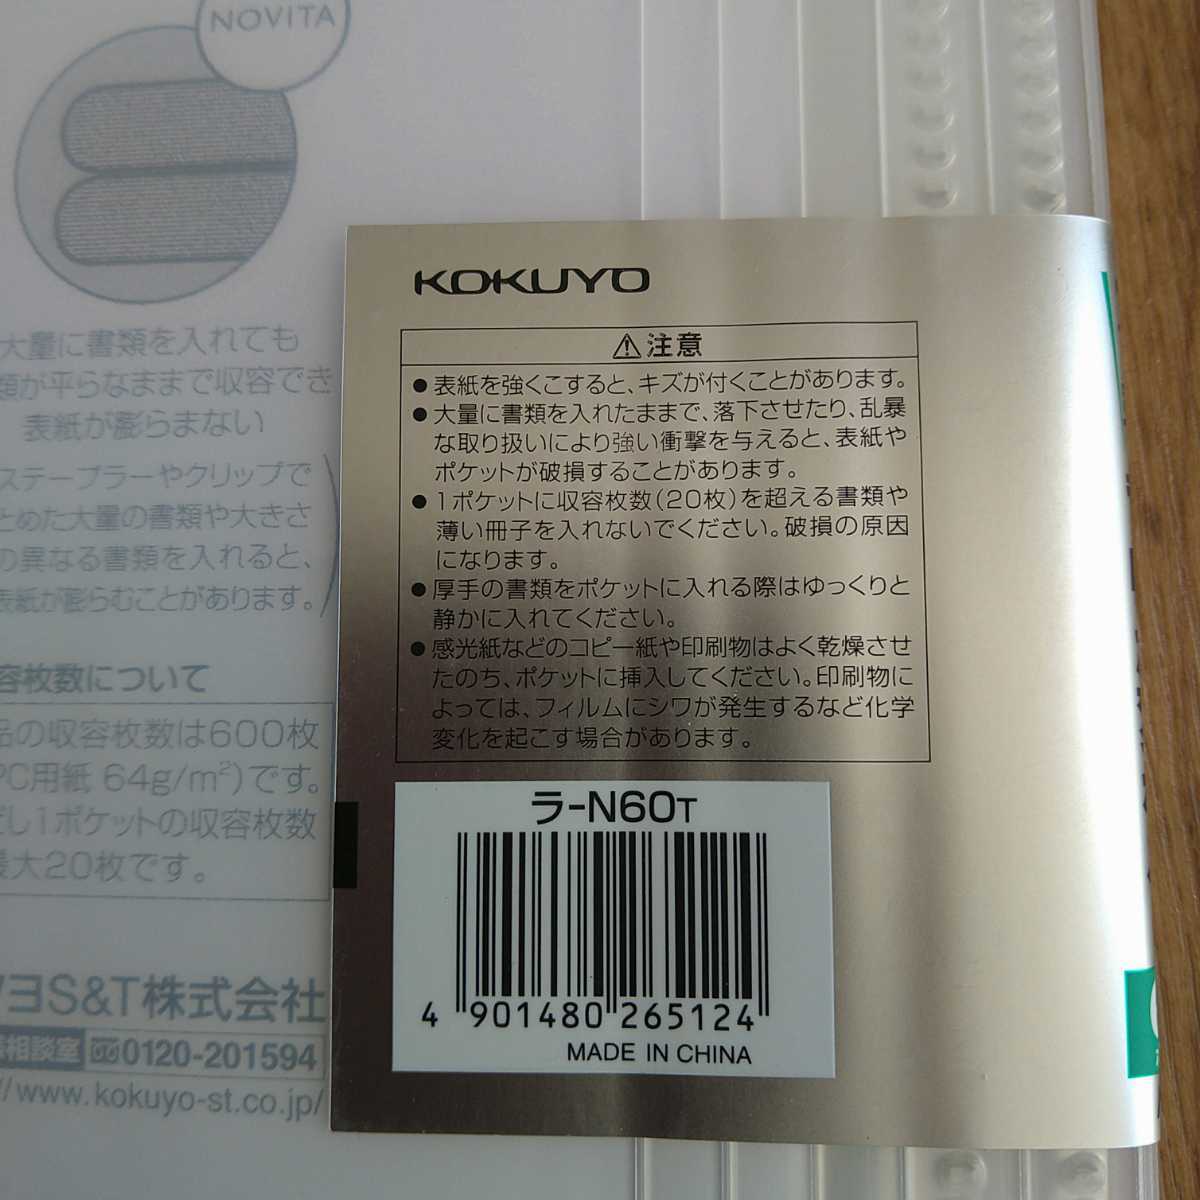 C1339[ не использовался выставленный товар ]kokyo файл clear книжка no Be taA4 60 листов прозрачный la-N60T KOKUYO документы файл офисная работа сопутствующие товары продажа комплектом отправка 210 иен 